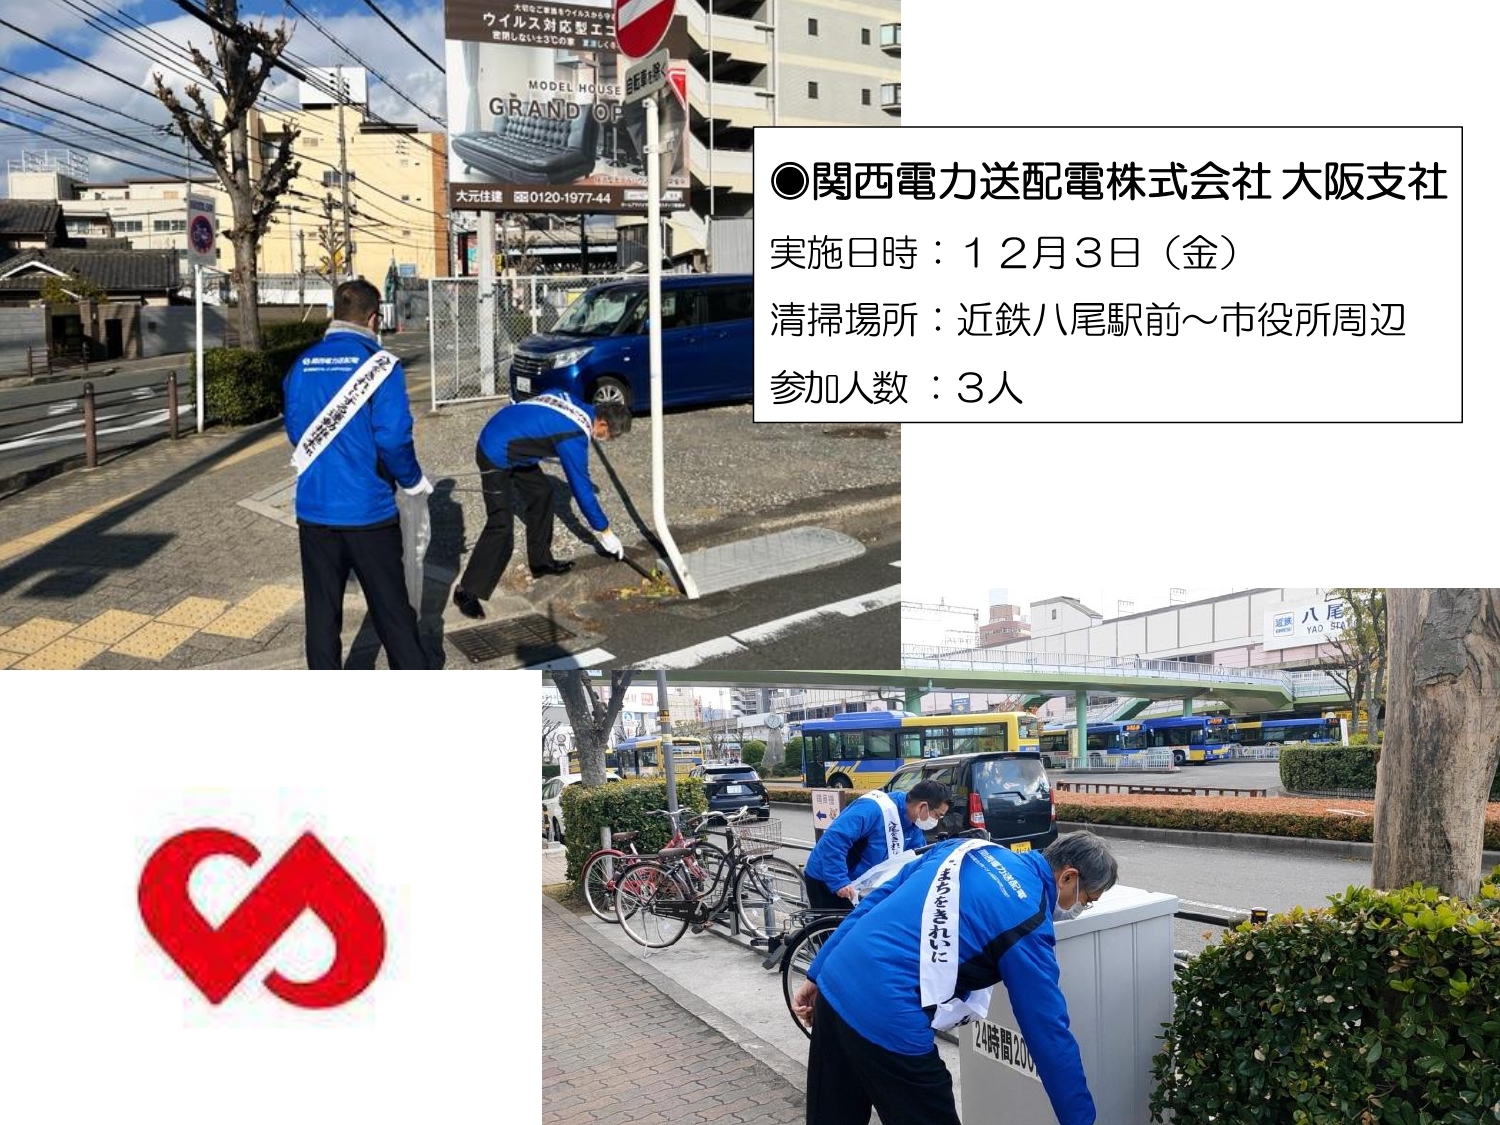 関西電力送配電株式会社 大阪支社の清掃画像